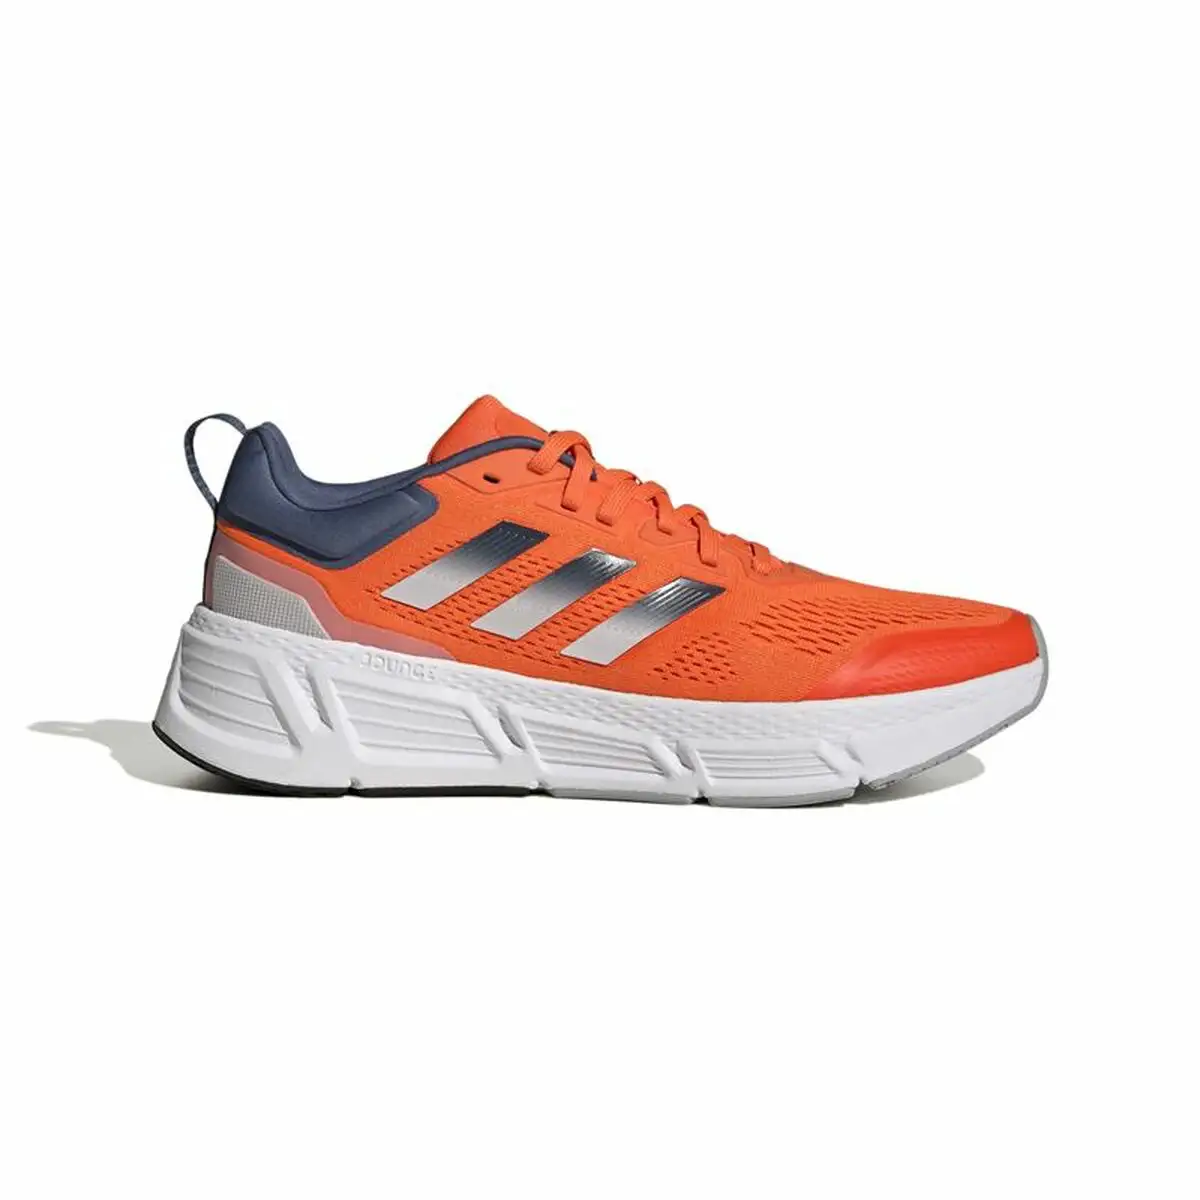 Chaussures de running pour adultes adidas questar orange homme_6230. DIAYTAR SENEGAL - Là où Chaque Produit a son Propre Éclat. Explorez notre boutique en ligne et trouvez des articles qui ajoutent de la brillance à votre quotidien.